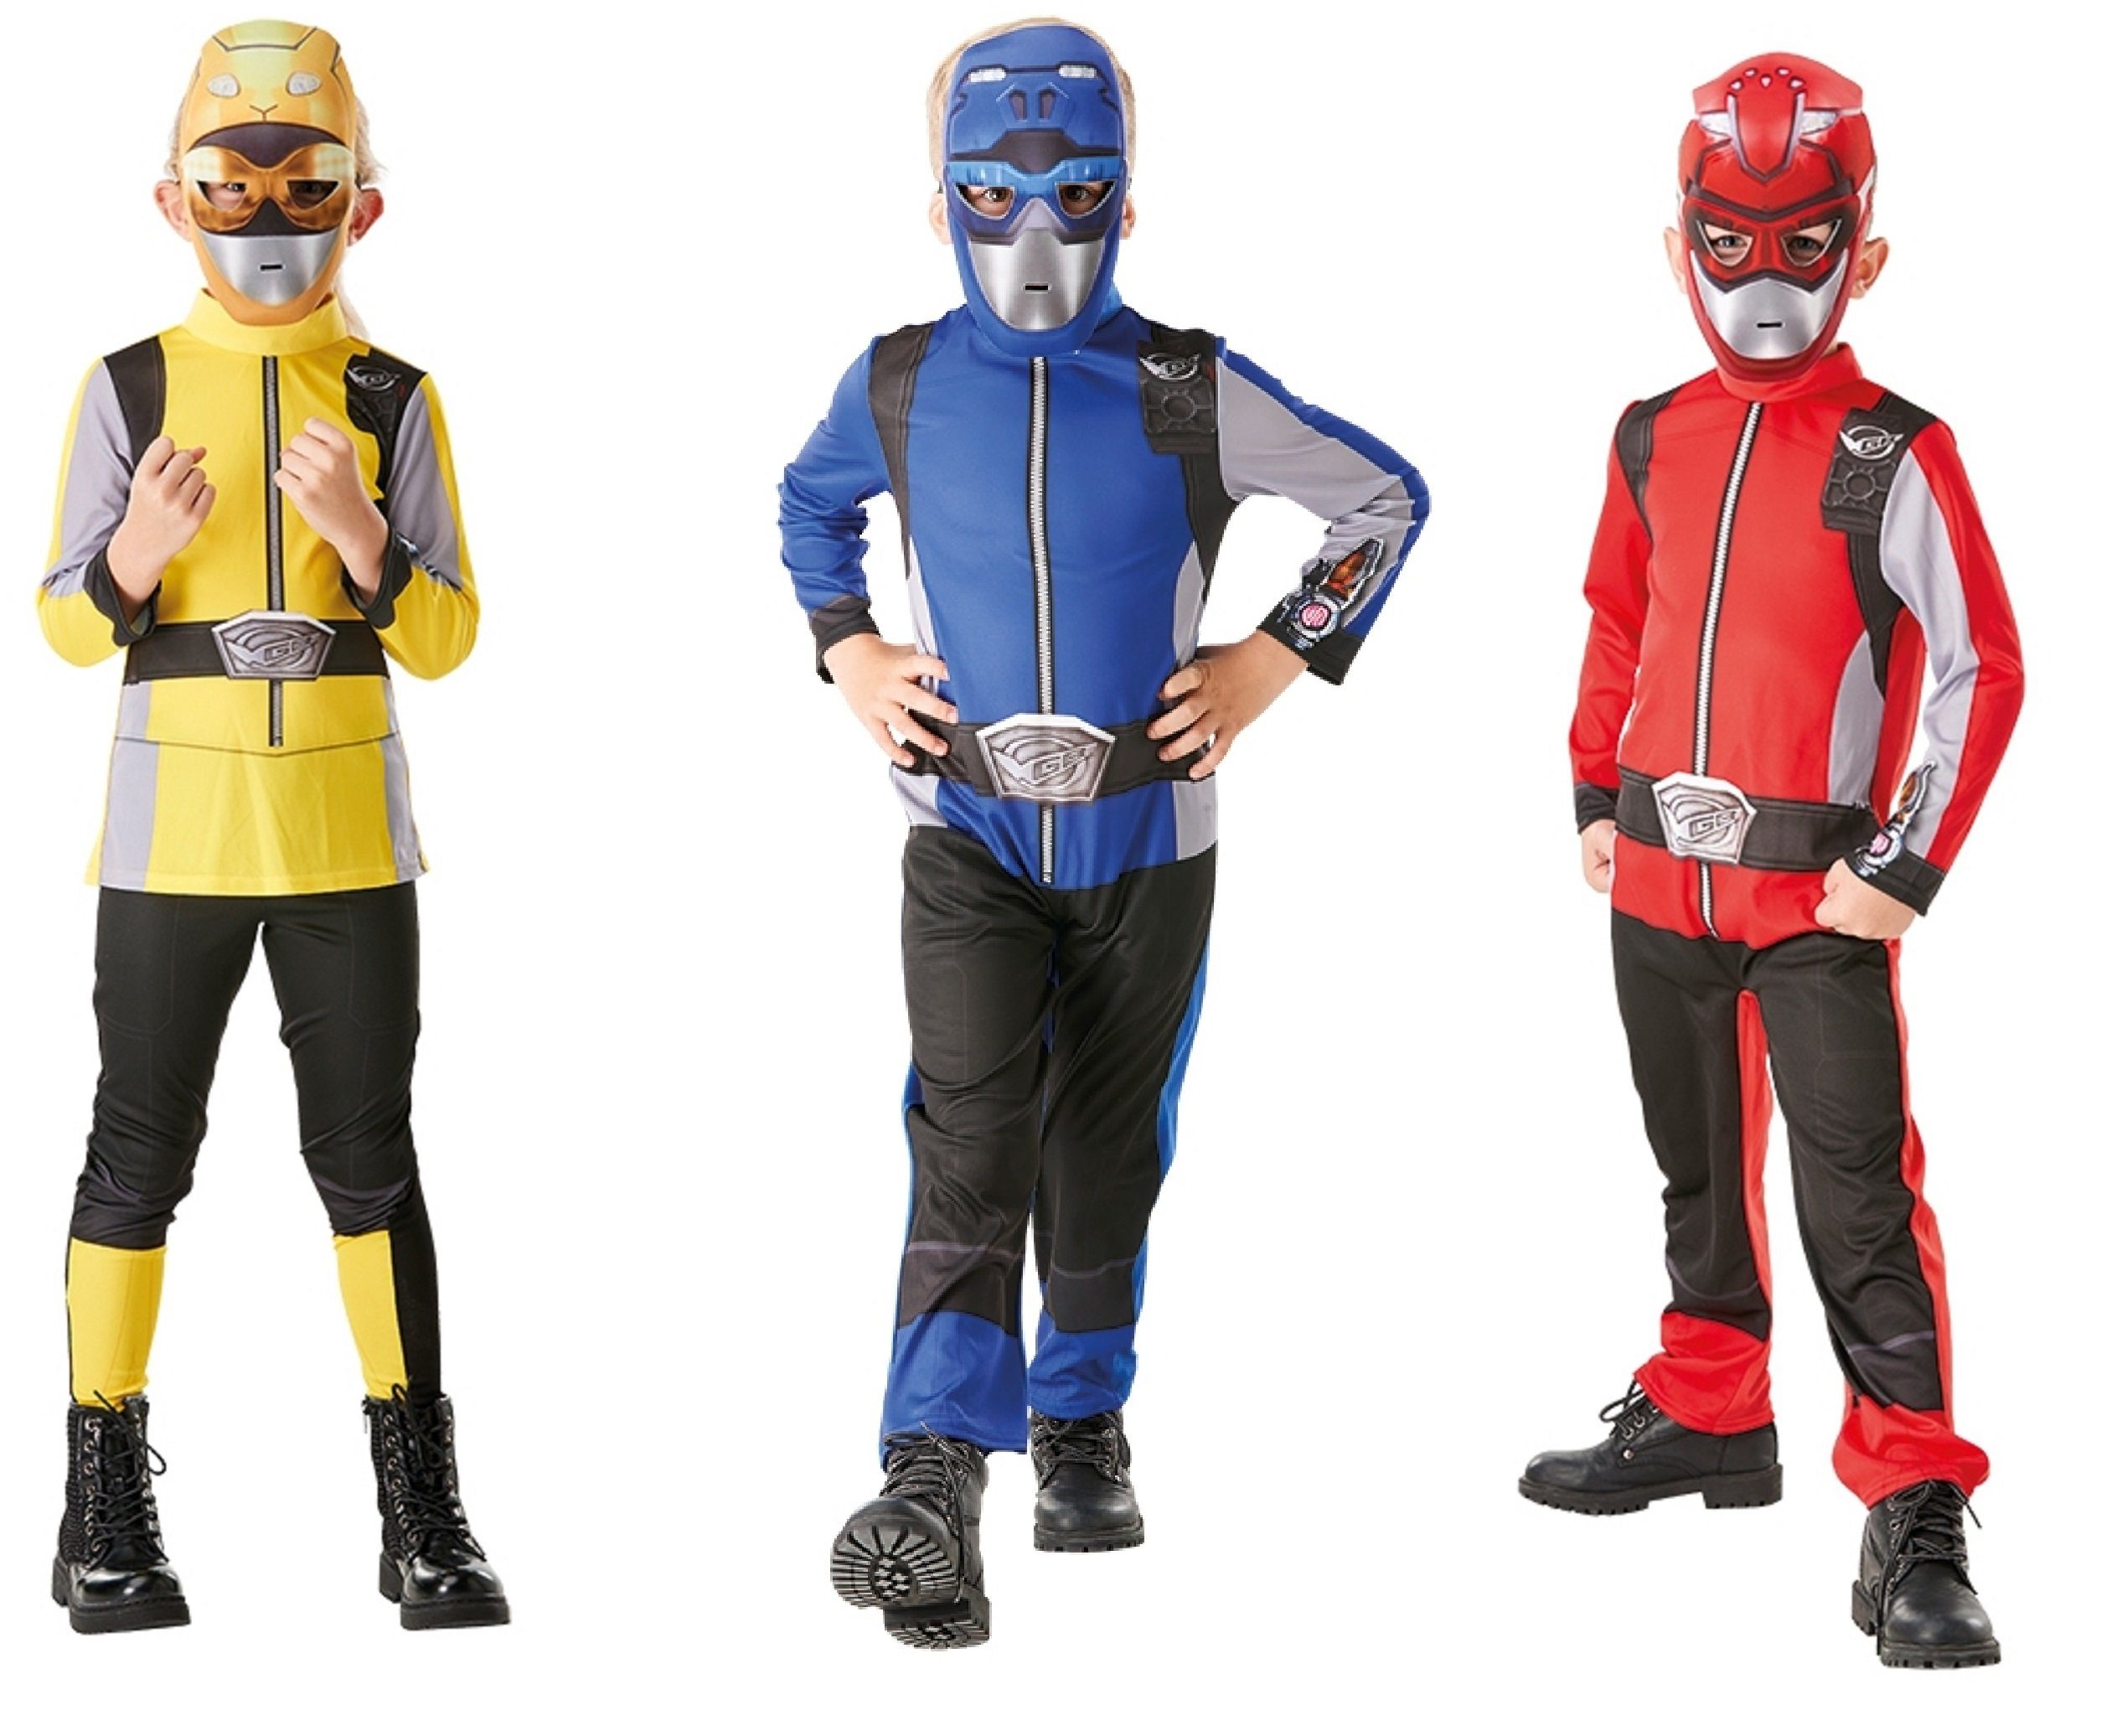 POWER RANGERS Kostüm, Gr S - M online kaufen | OTTO